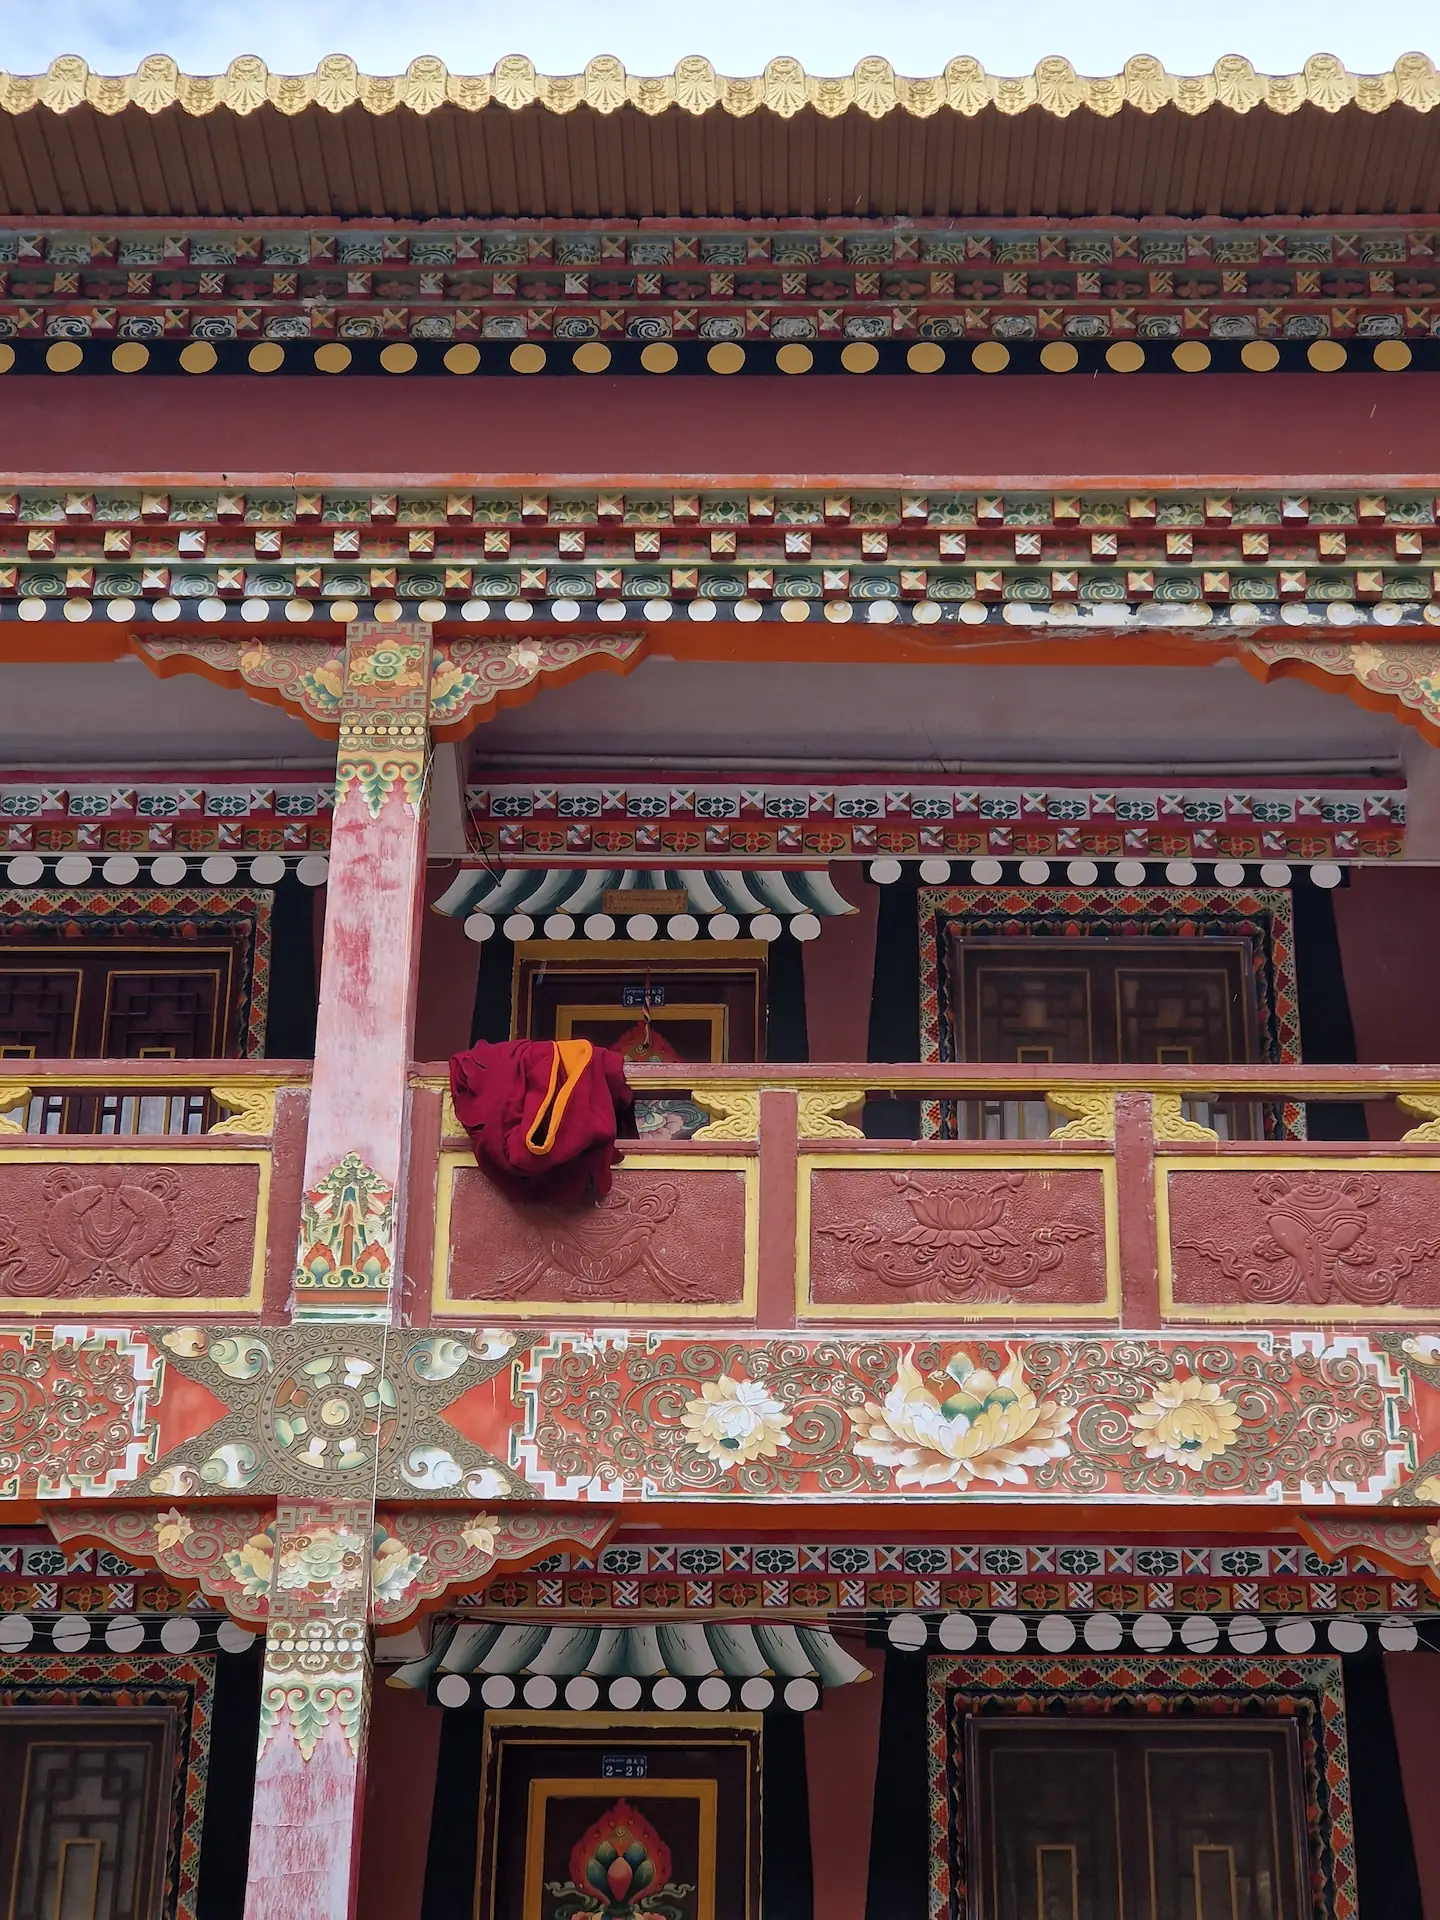 Des robes rouges sur une balustrade devant la chambre d'un moine